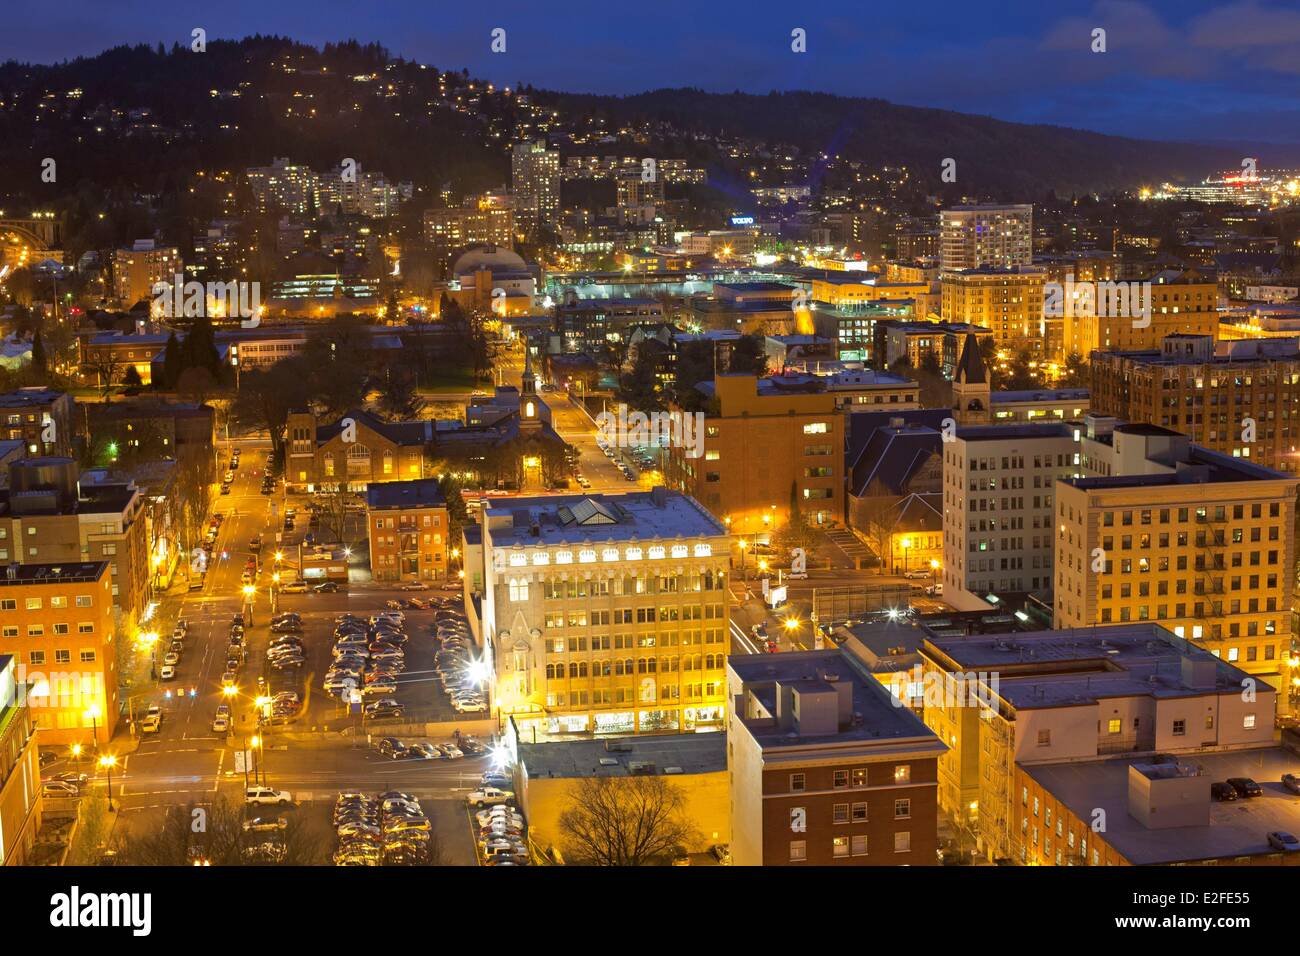 United States, Oregon, Portland, vue générale de la ville au crépuscule Banque D'Images